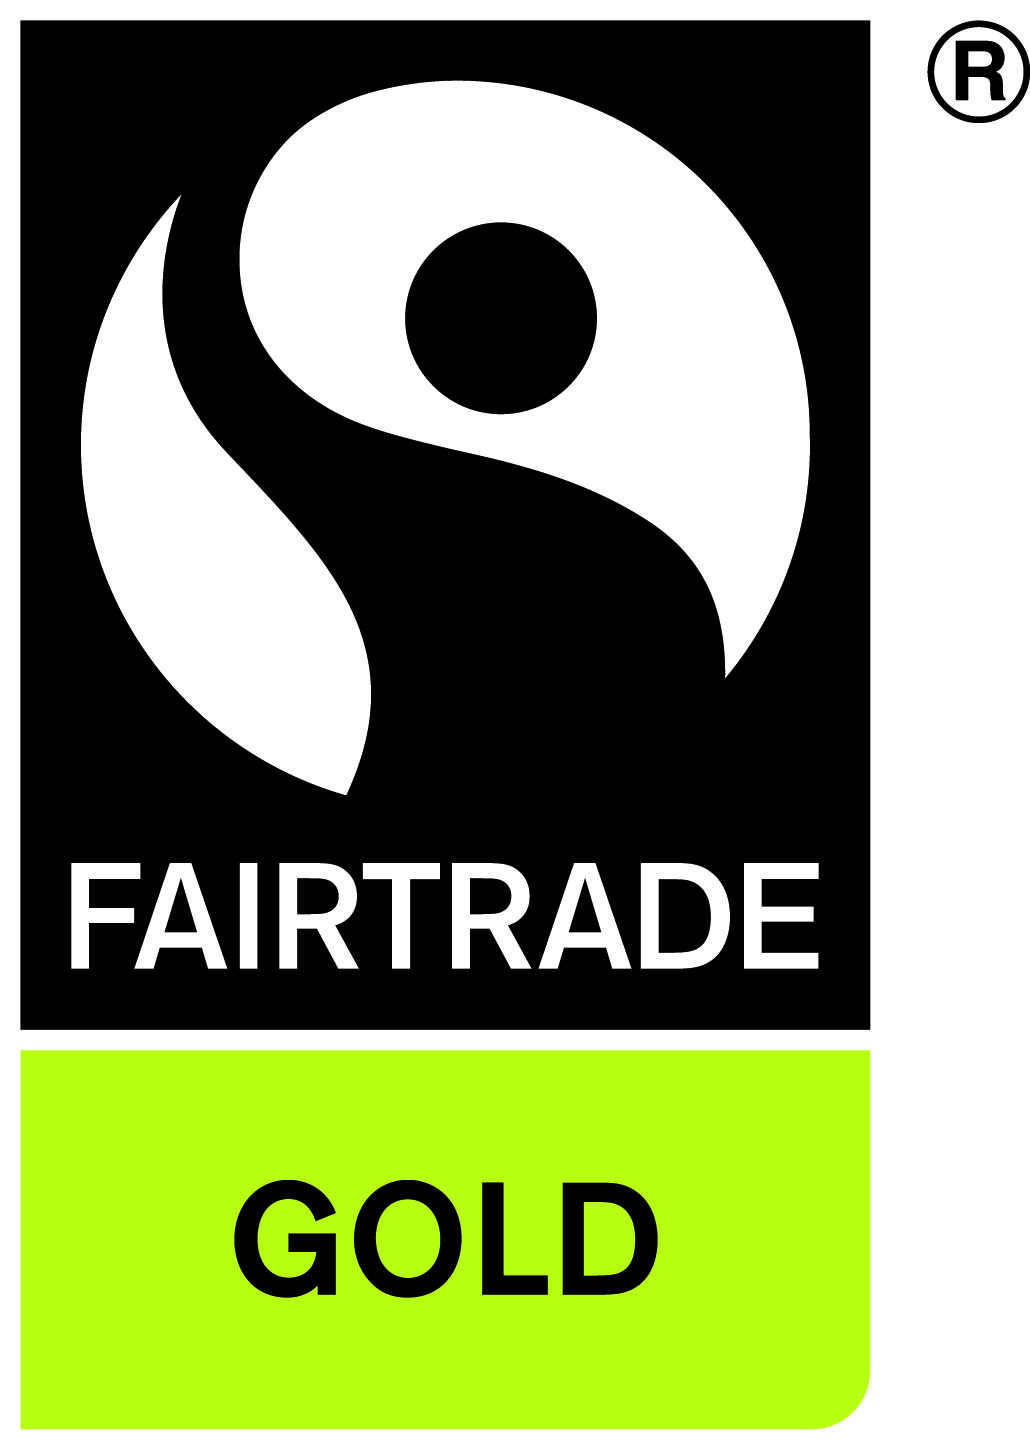 The Fairtrade Gold logo.